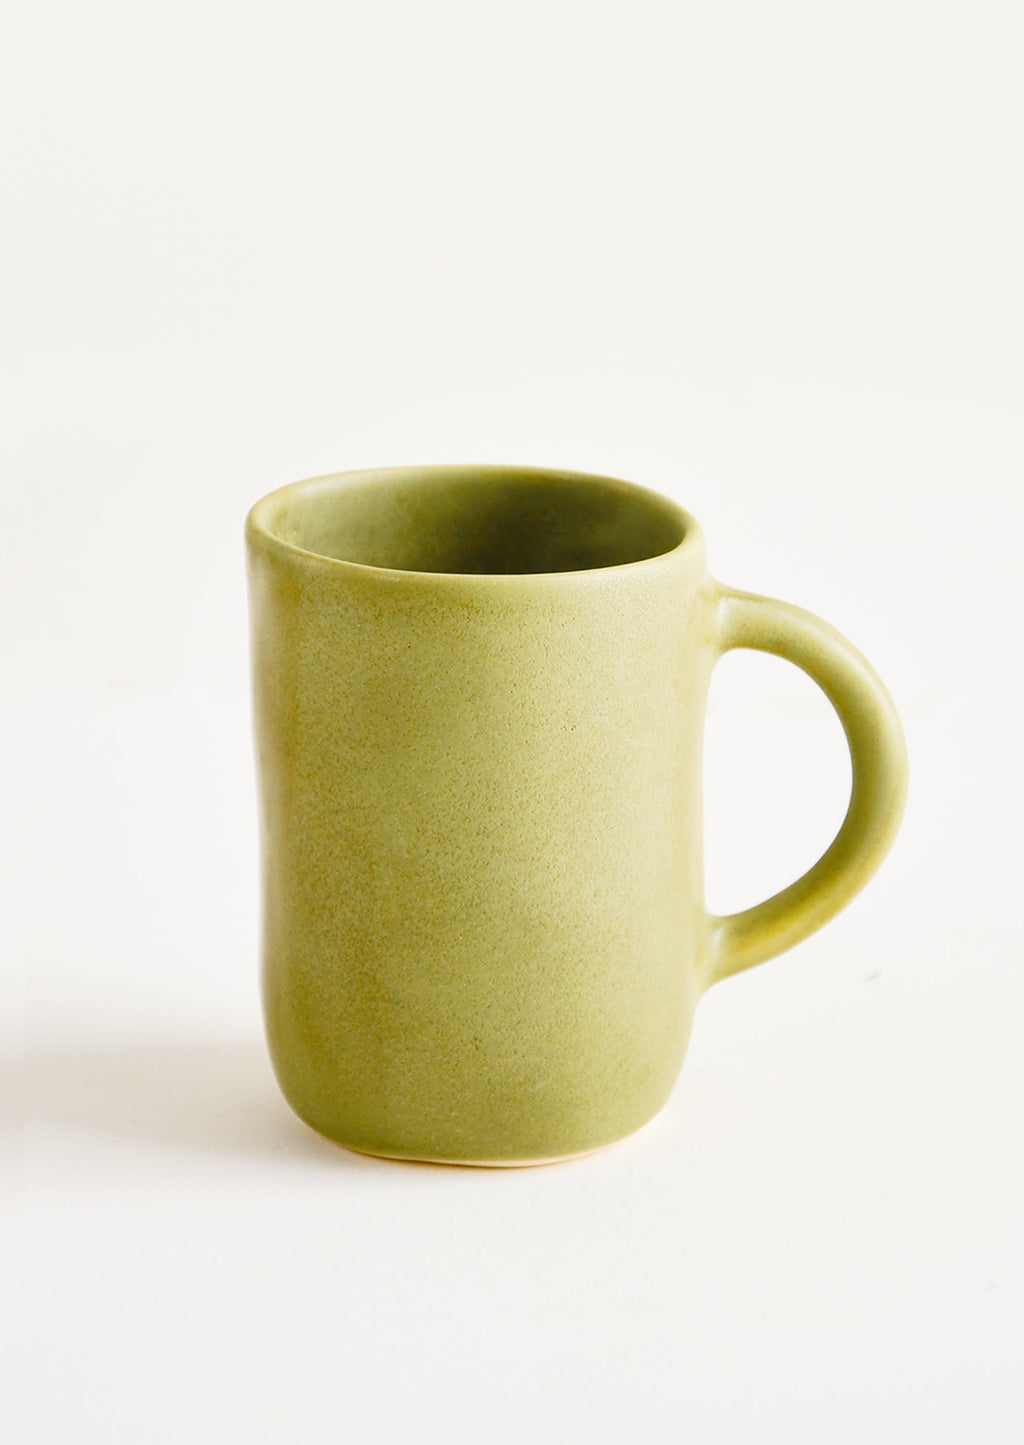 Avocado: Ceramic mug with handle, shown in matte avocado green glaze.